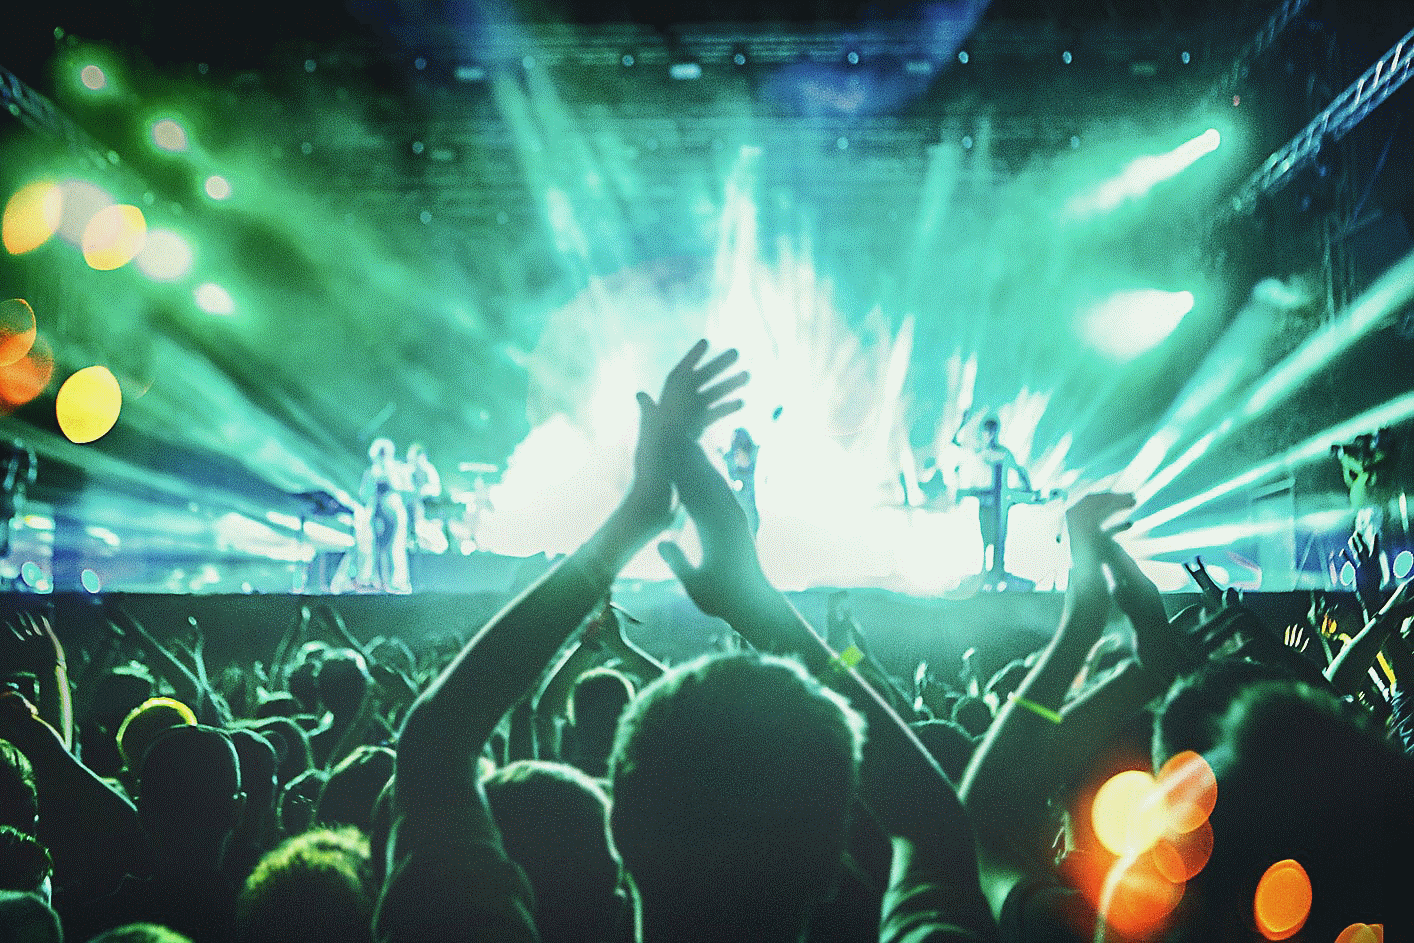 Εικόνα ζωντανής συναυλίας όπου πολλοί άνθρωποι χειροκροτούν, ενώ ο φωτισμός έχει μπλε και πράσινο χρώμα